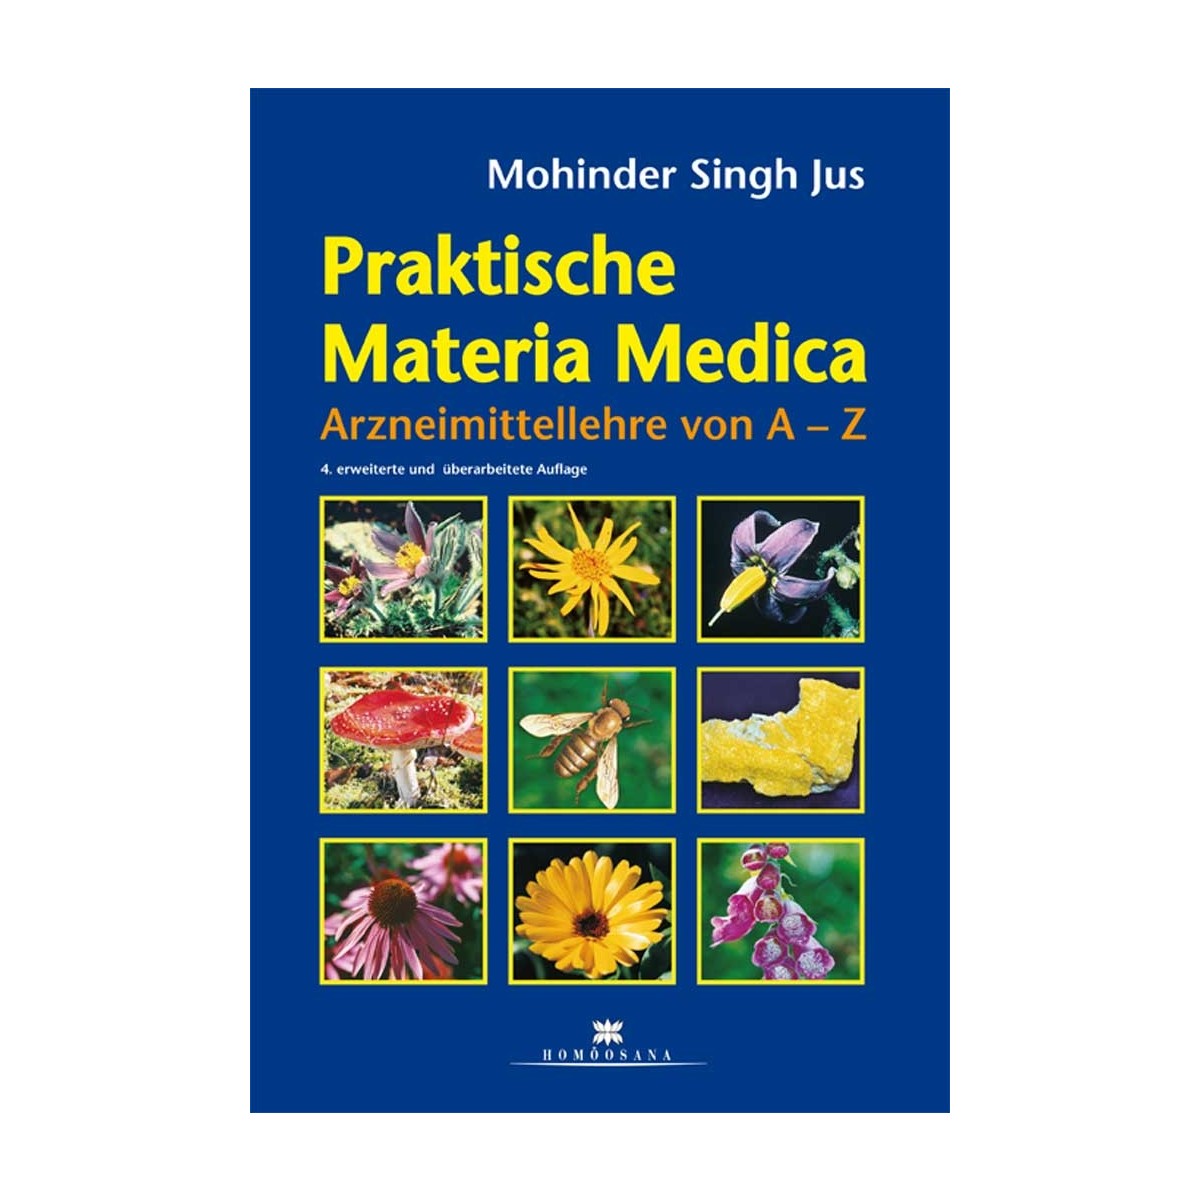 Jus Mohinder Singh, Praktische Materia Medica, 4. erweiterte und überarbeitete Neuauflage 2021